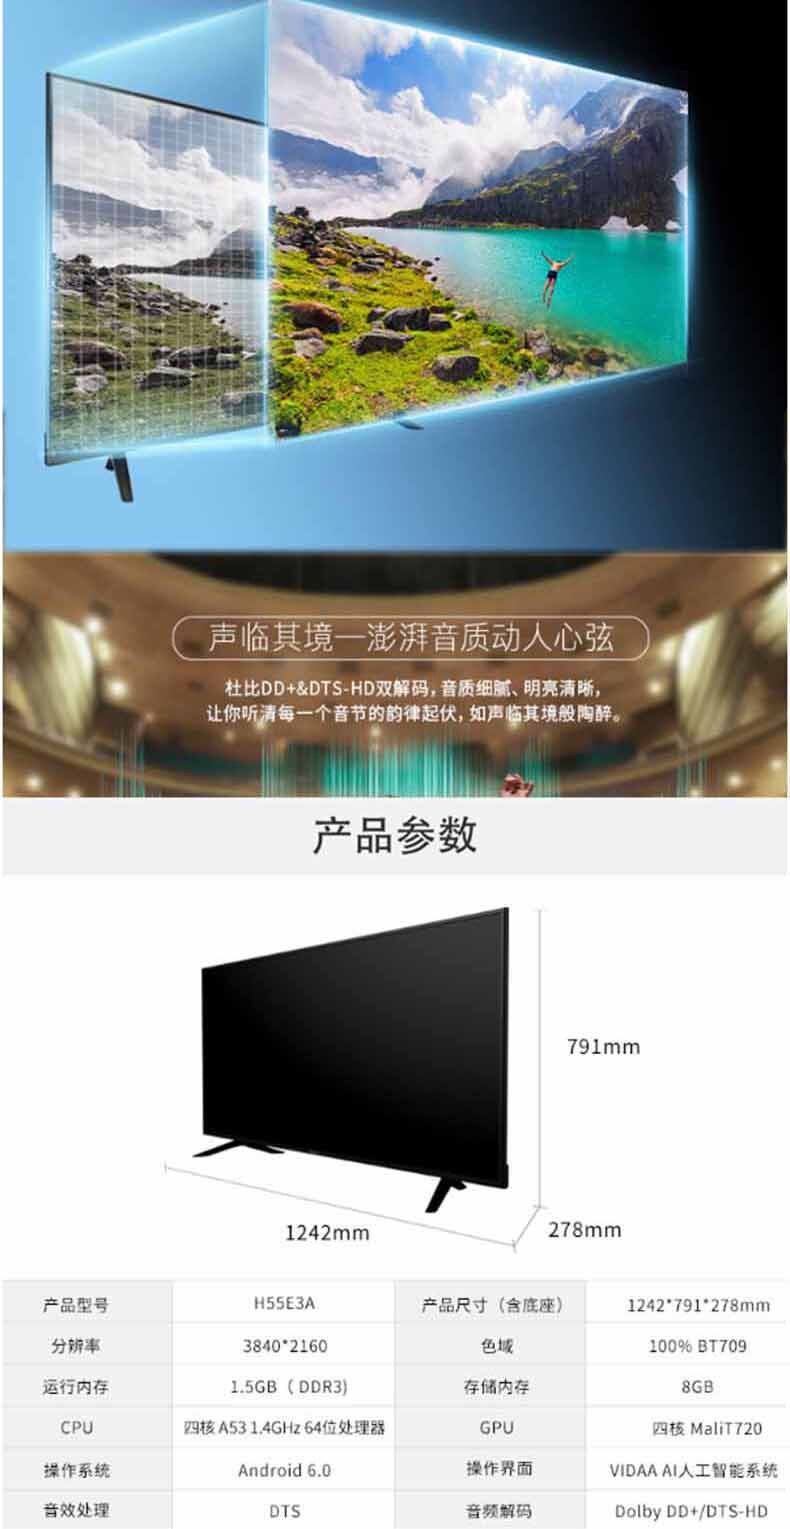 海信 Hisense 人工智能电视 H55E3A (黑色) 55英寸 超高清4K HDR 金属背板 丰富影视教